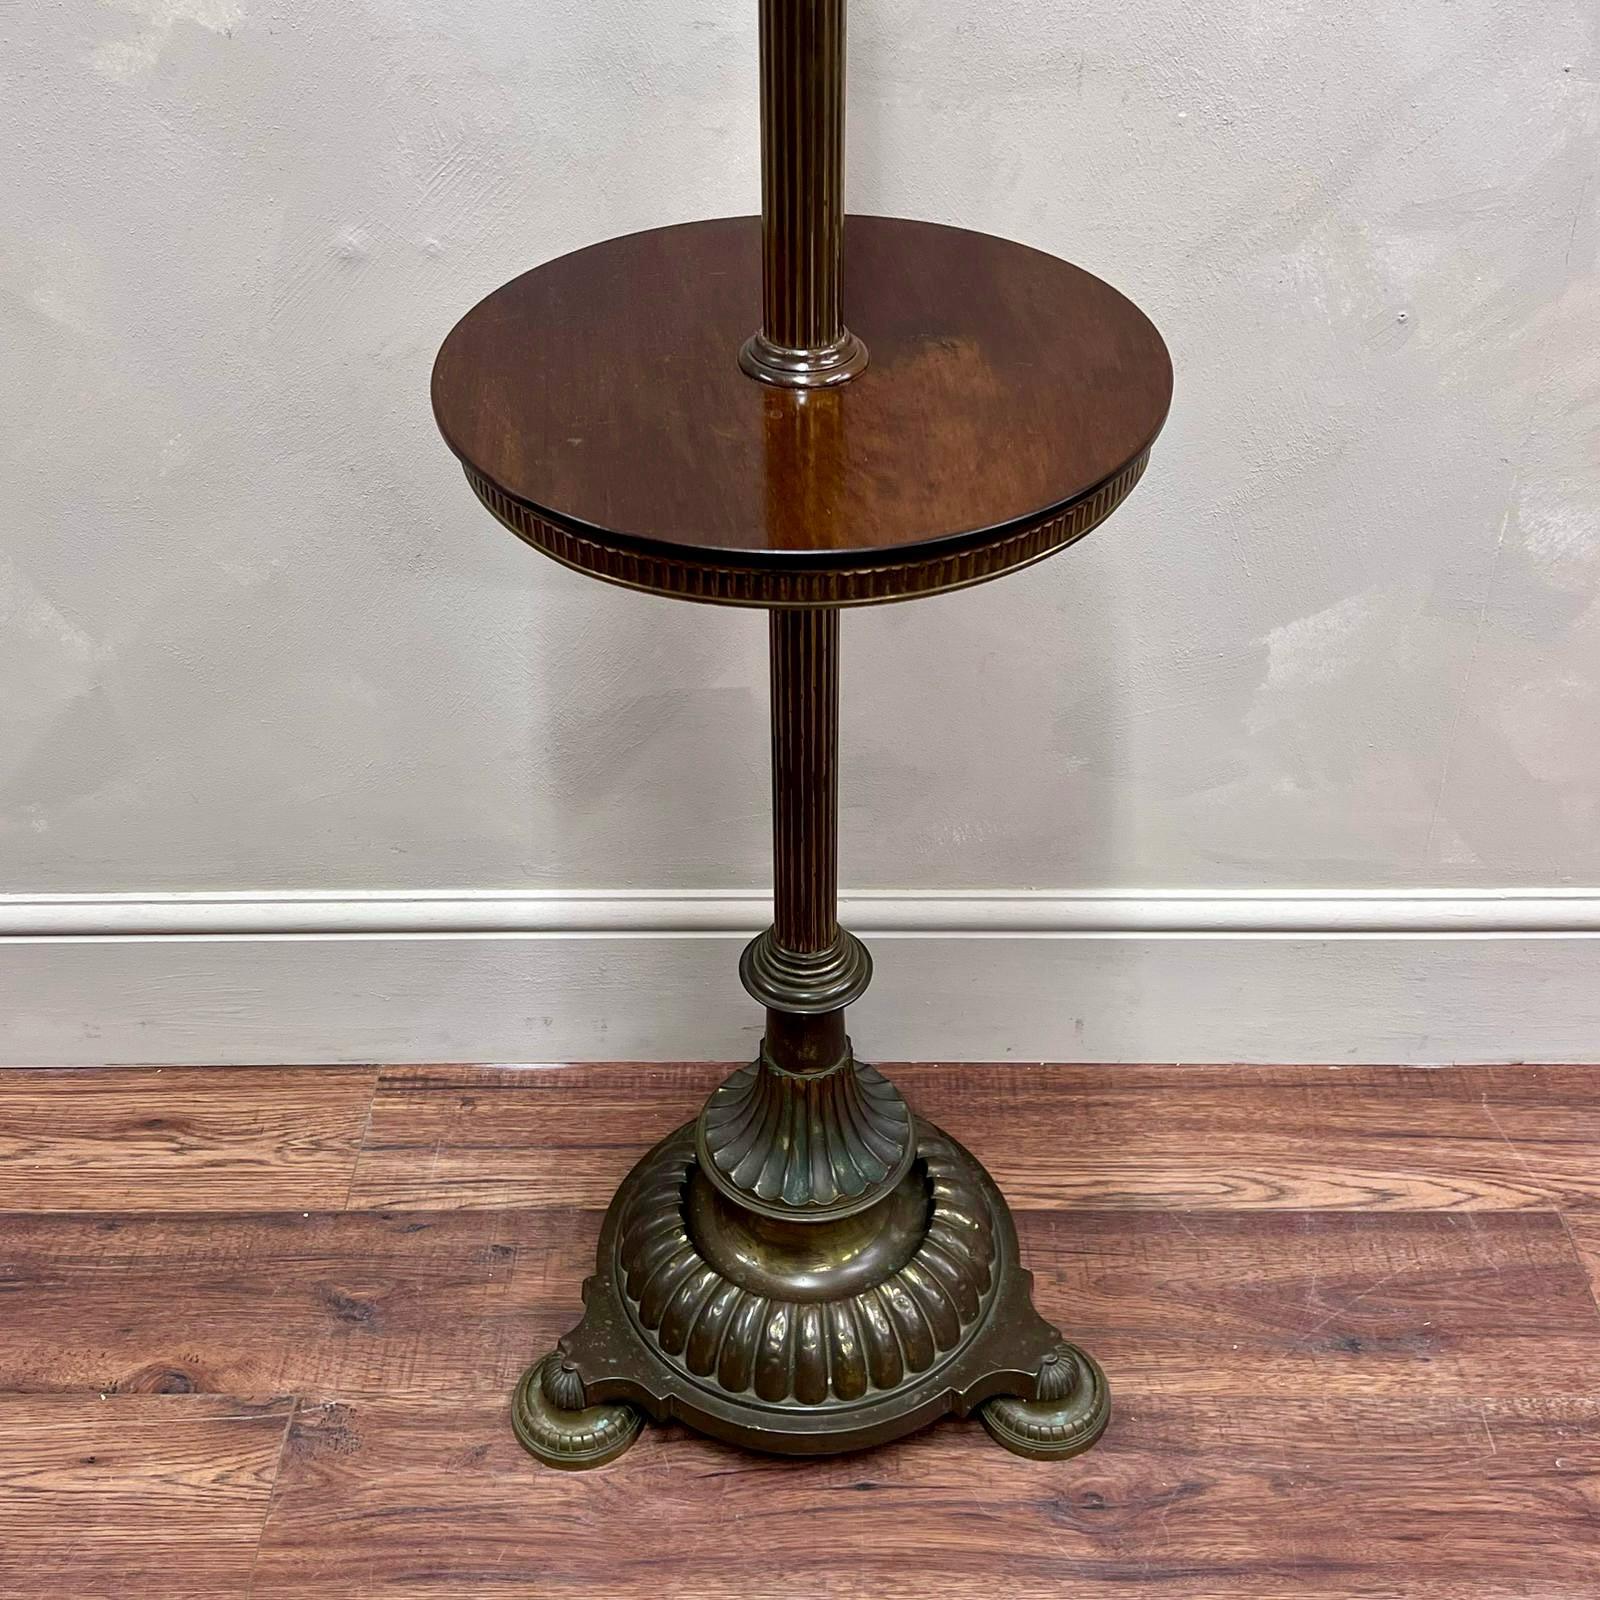 19. Jahrhundert, Stehlampe aus Messing mit einem sehr nützlichen Beistelltisch aus poliertem Mahagoni, der wie abgebildet neben einem Stuhl Platz findet.
Wunderschön detailliert, stabiler Sockel.
Vollständig verdrahtet und getestet, können wir die